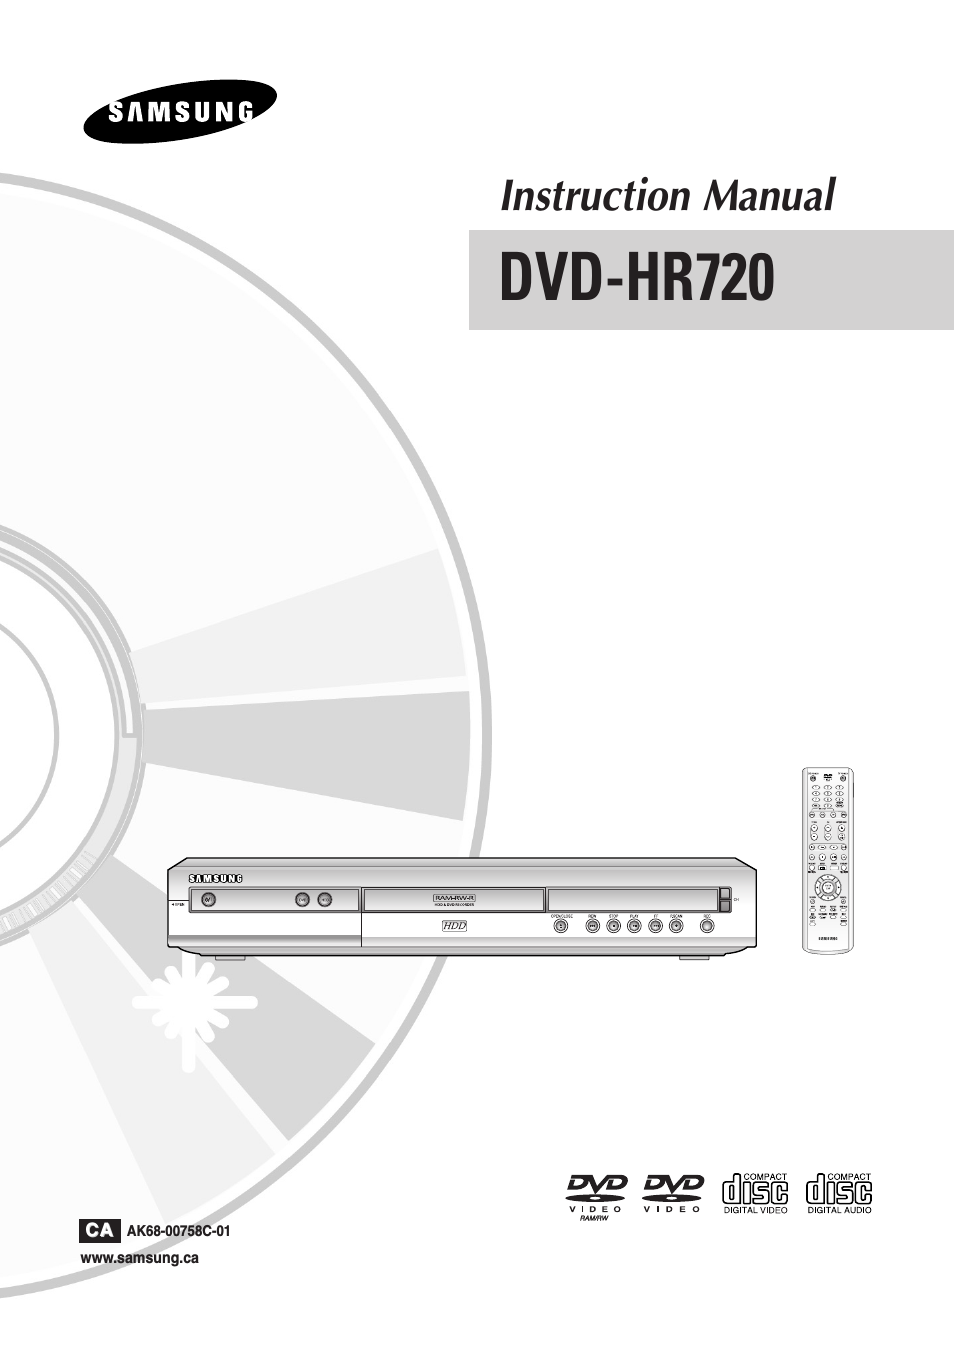 DVD-HR720